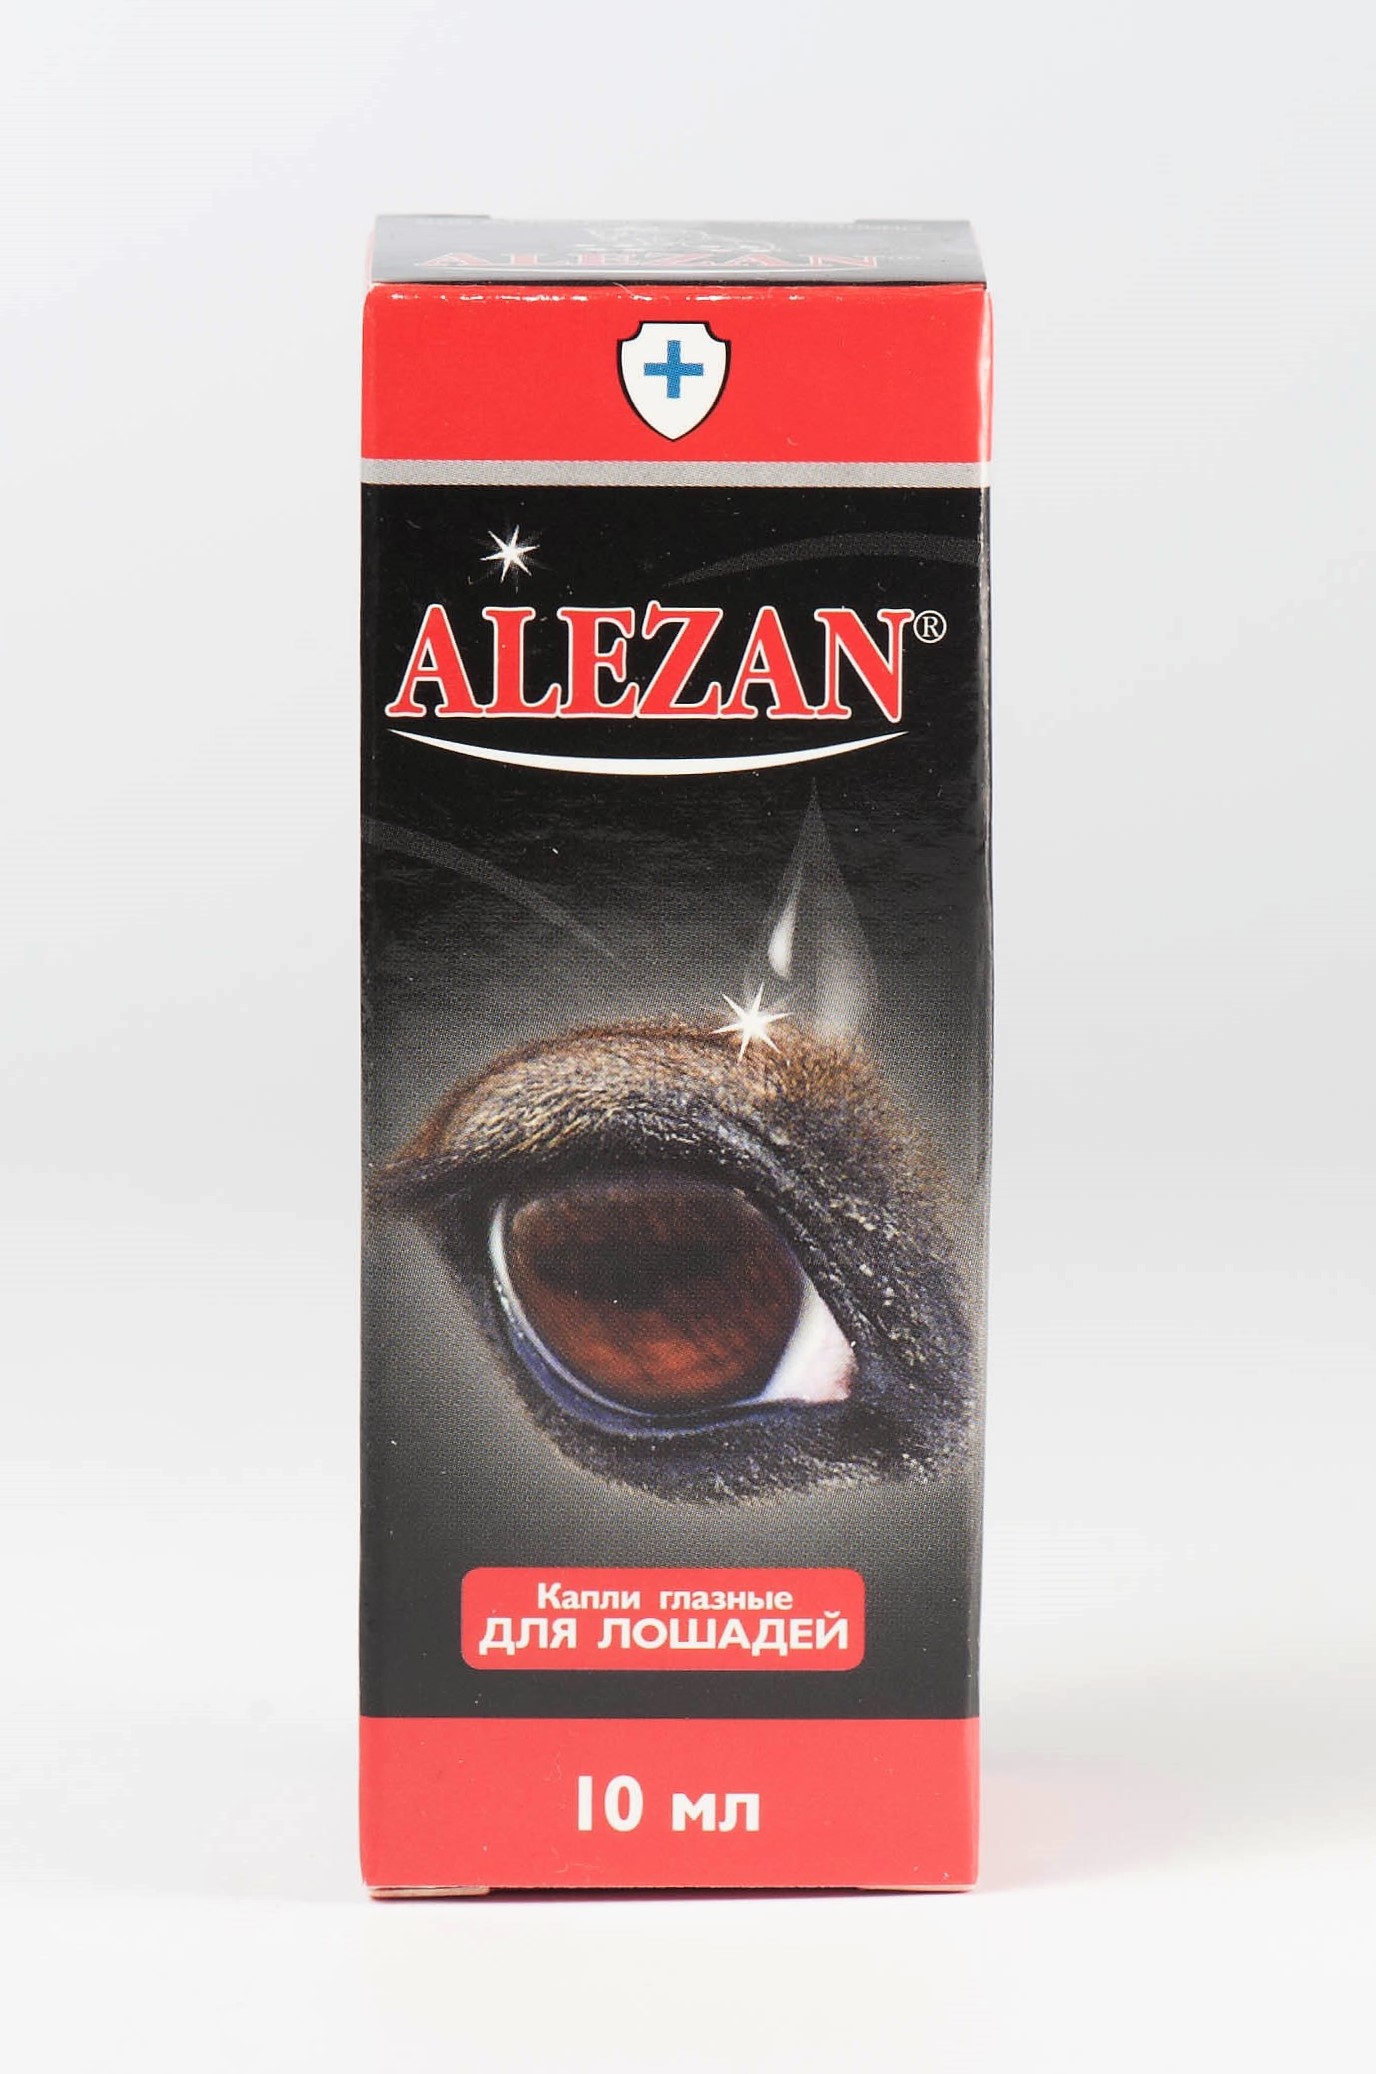 Алезан Alezan глазные капли 10мл ветаптека  ИппоВет (IppoVet)